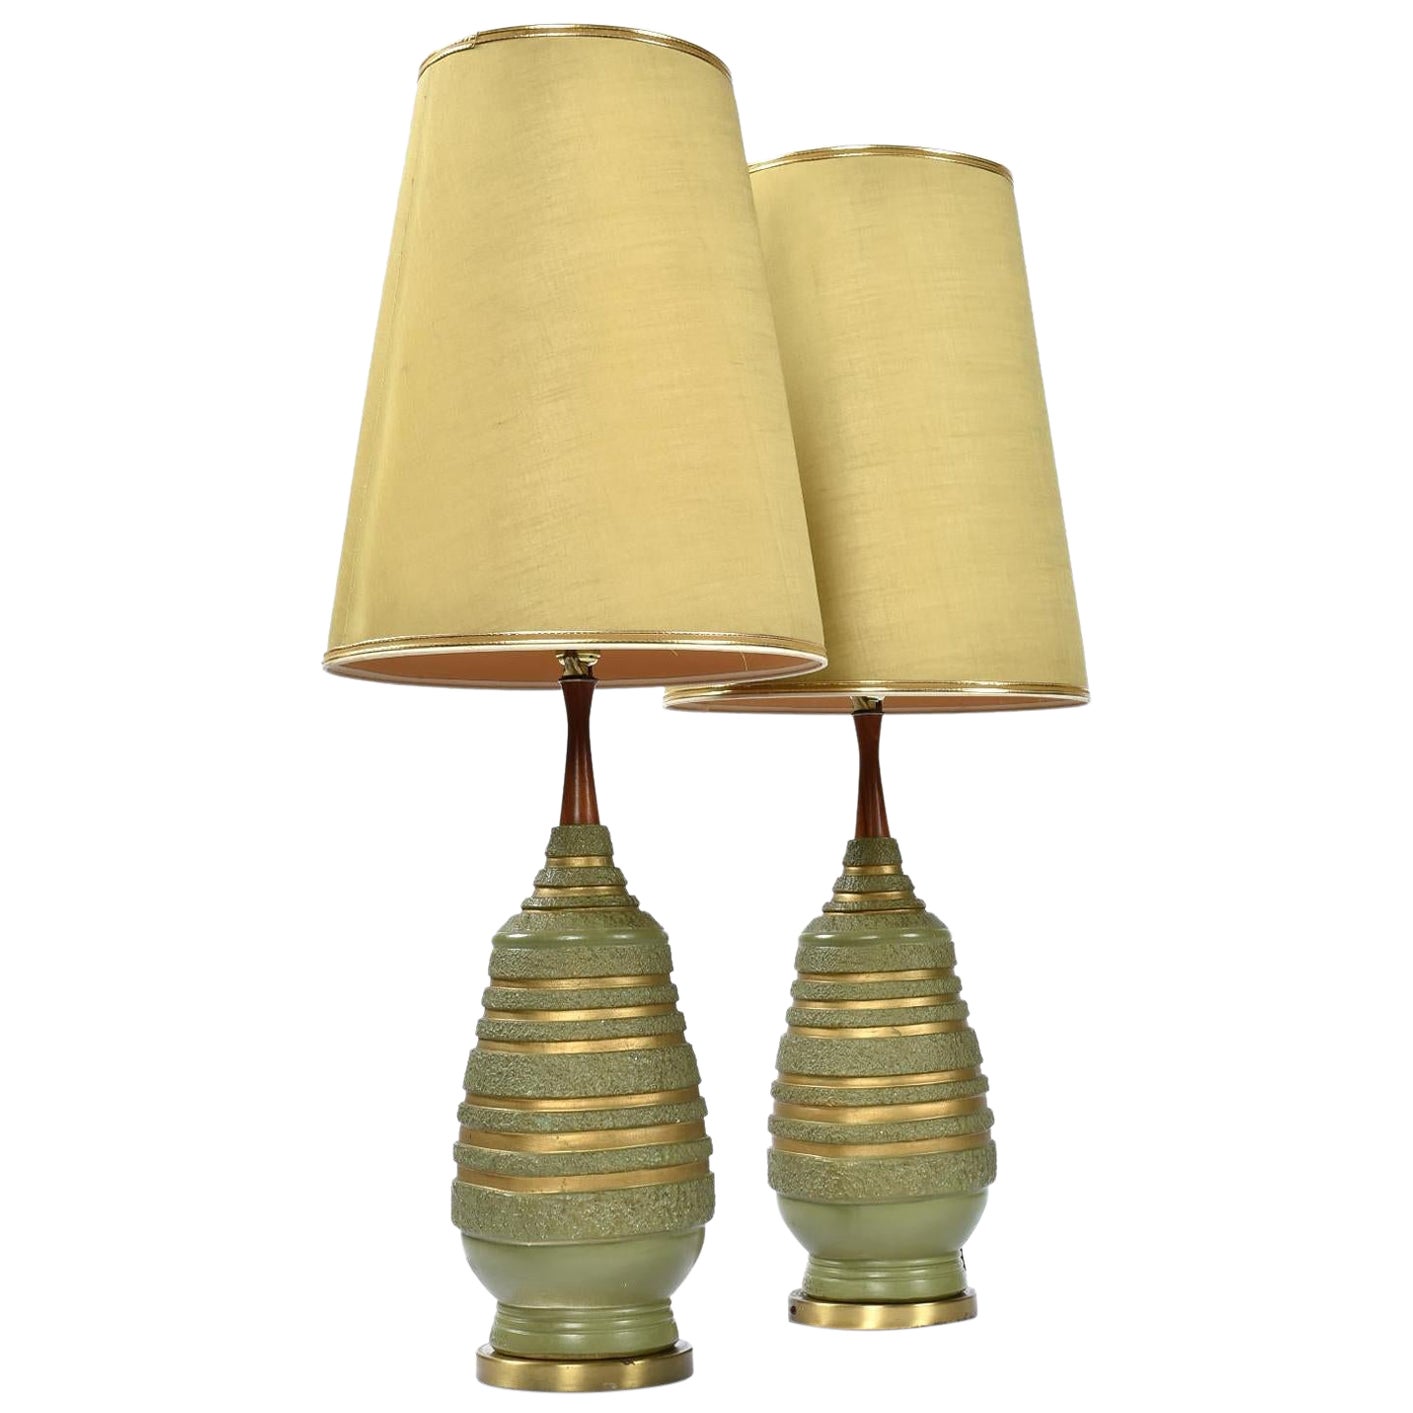 Unglaubliche komplette Paar Mid-Century Modern avacado grün Lampen von Plasto. Diese Lampen gehören zu den authentischsten Mid-Century-Lampen überhaupt. Es ist recht selten, dass man Lampen mit ihren Originalschirmen findet. Diese grünen, konischen